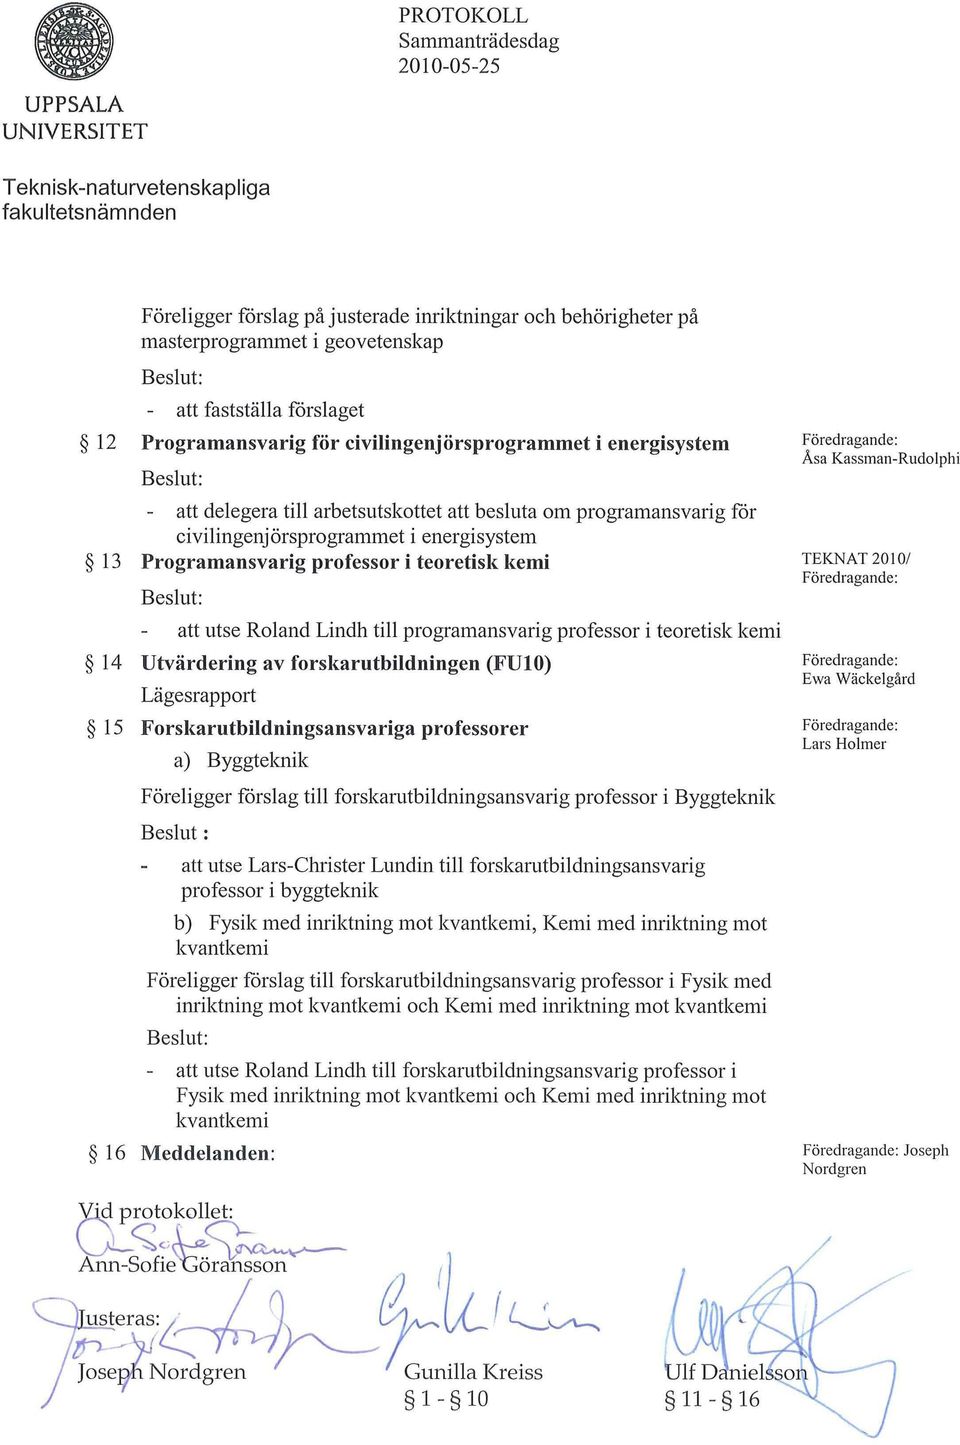 Programansvarig professor i teoretisk kemi att utse Roland Lindh till programansvarig professor i teoretisk kemi 14 Utvärdering av forskarutbildningen (FUIO) Lägesrapport 15